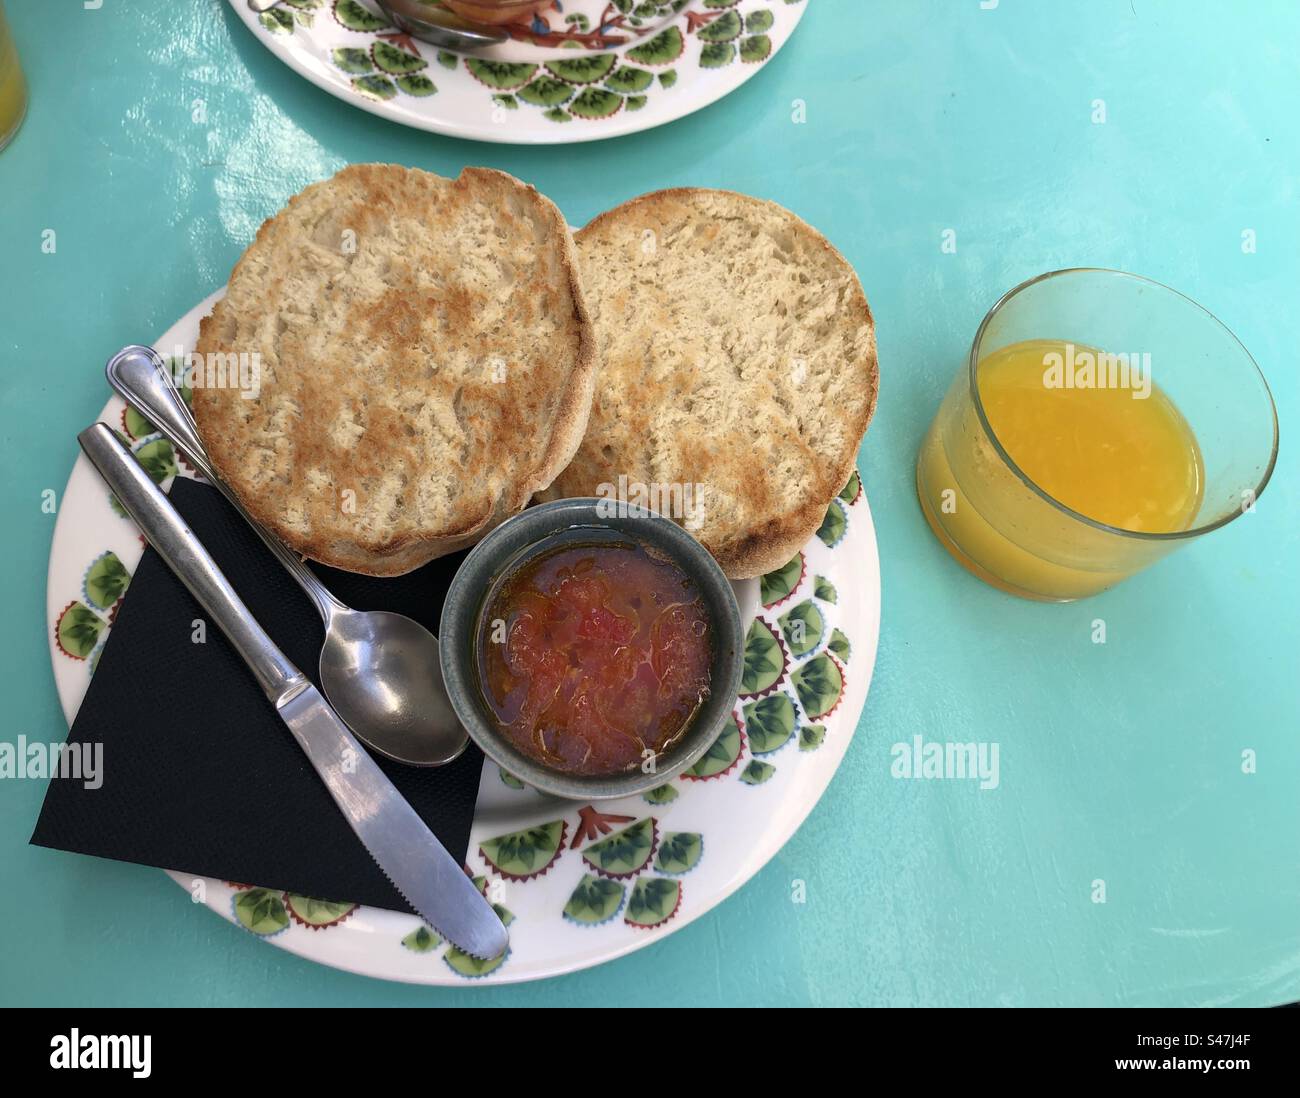 Le petit-déjeuner espagnol se compose de pain grillé, de tomate râpée et d'huile d'olive Banque D'Images